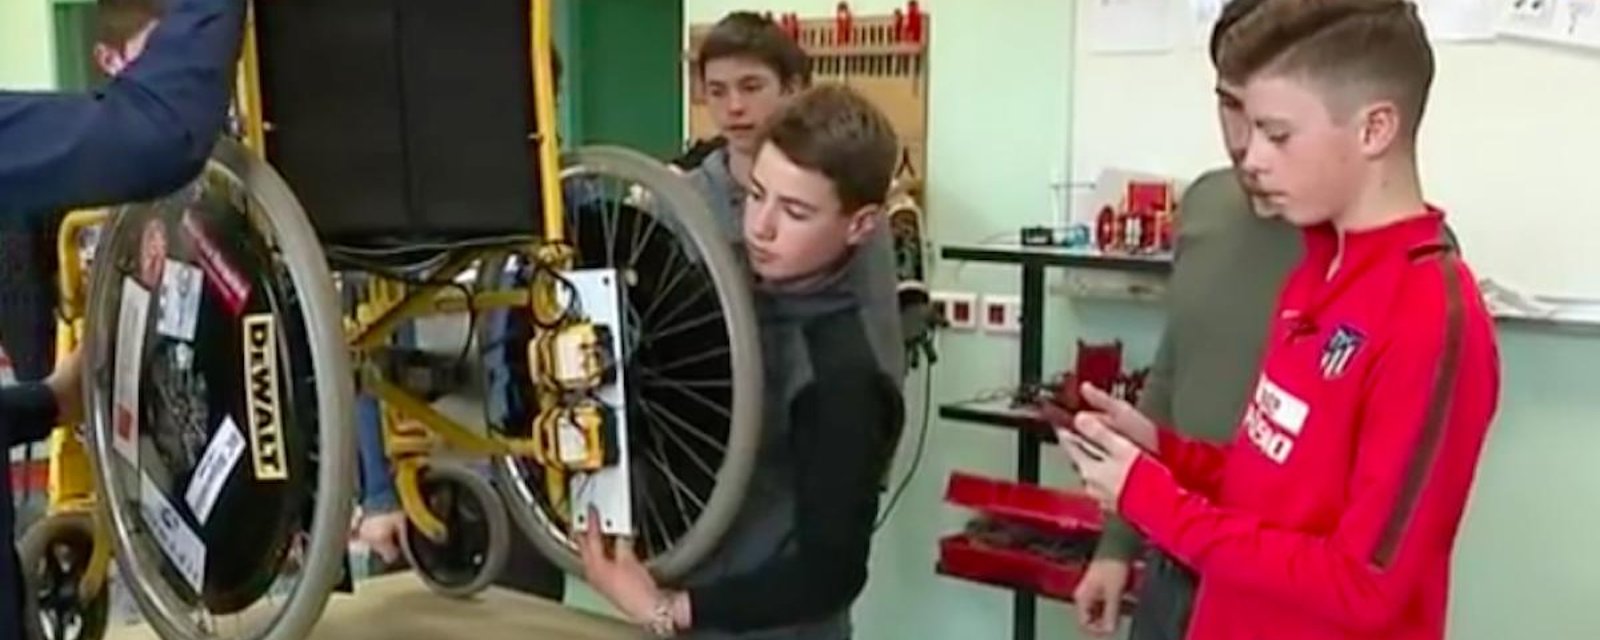 Pour aider leur ami handicapé, des élèves de secondaire créent un fauteuil roulant connecté